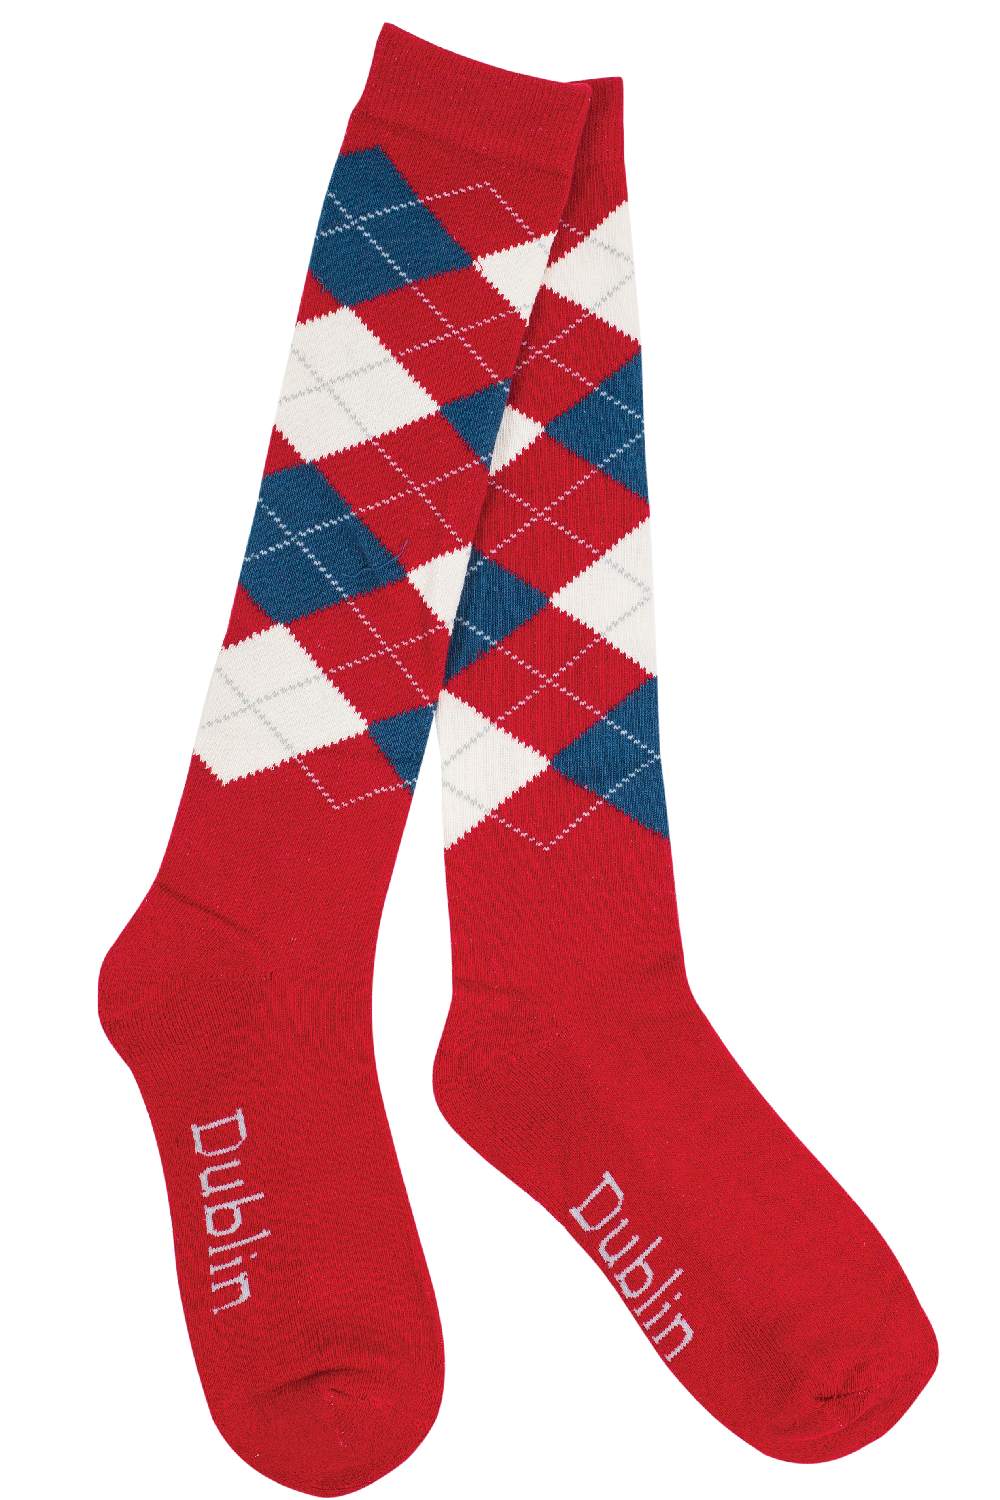 Dublin Argyle Socks- Red/Navy/White 